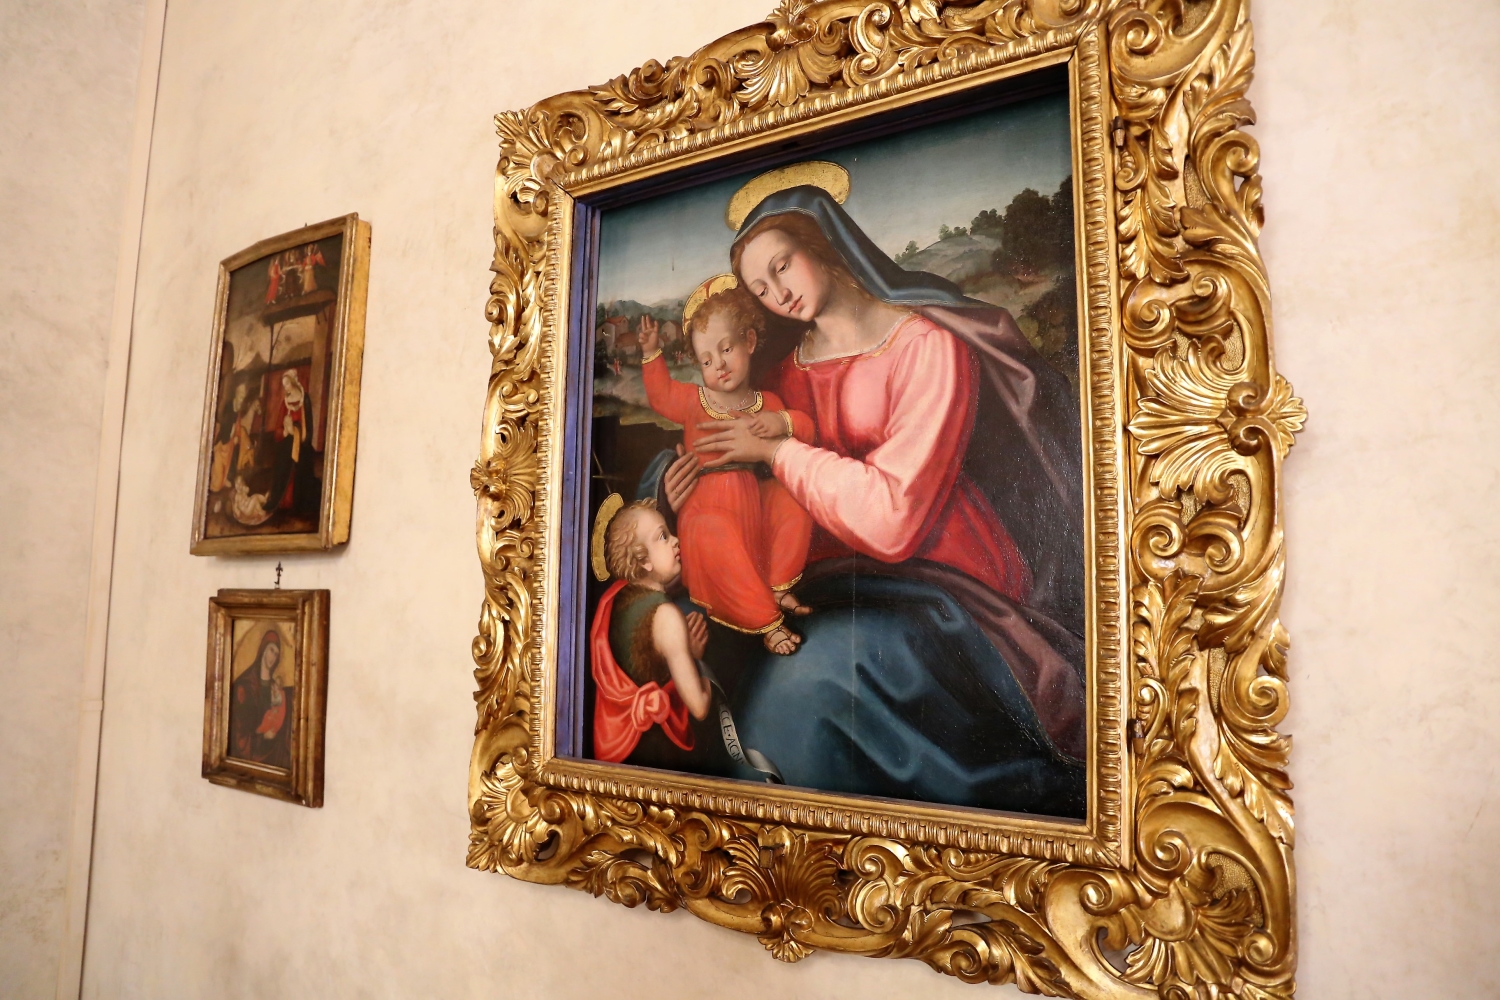 Nuove opere nella Sala del Caminetto in Palazzo Medici Riccardi (foto di Antonello Serino - Ufficio Stampa, Redazione di Met)